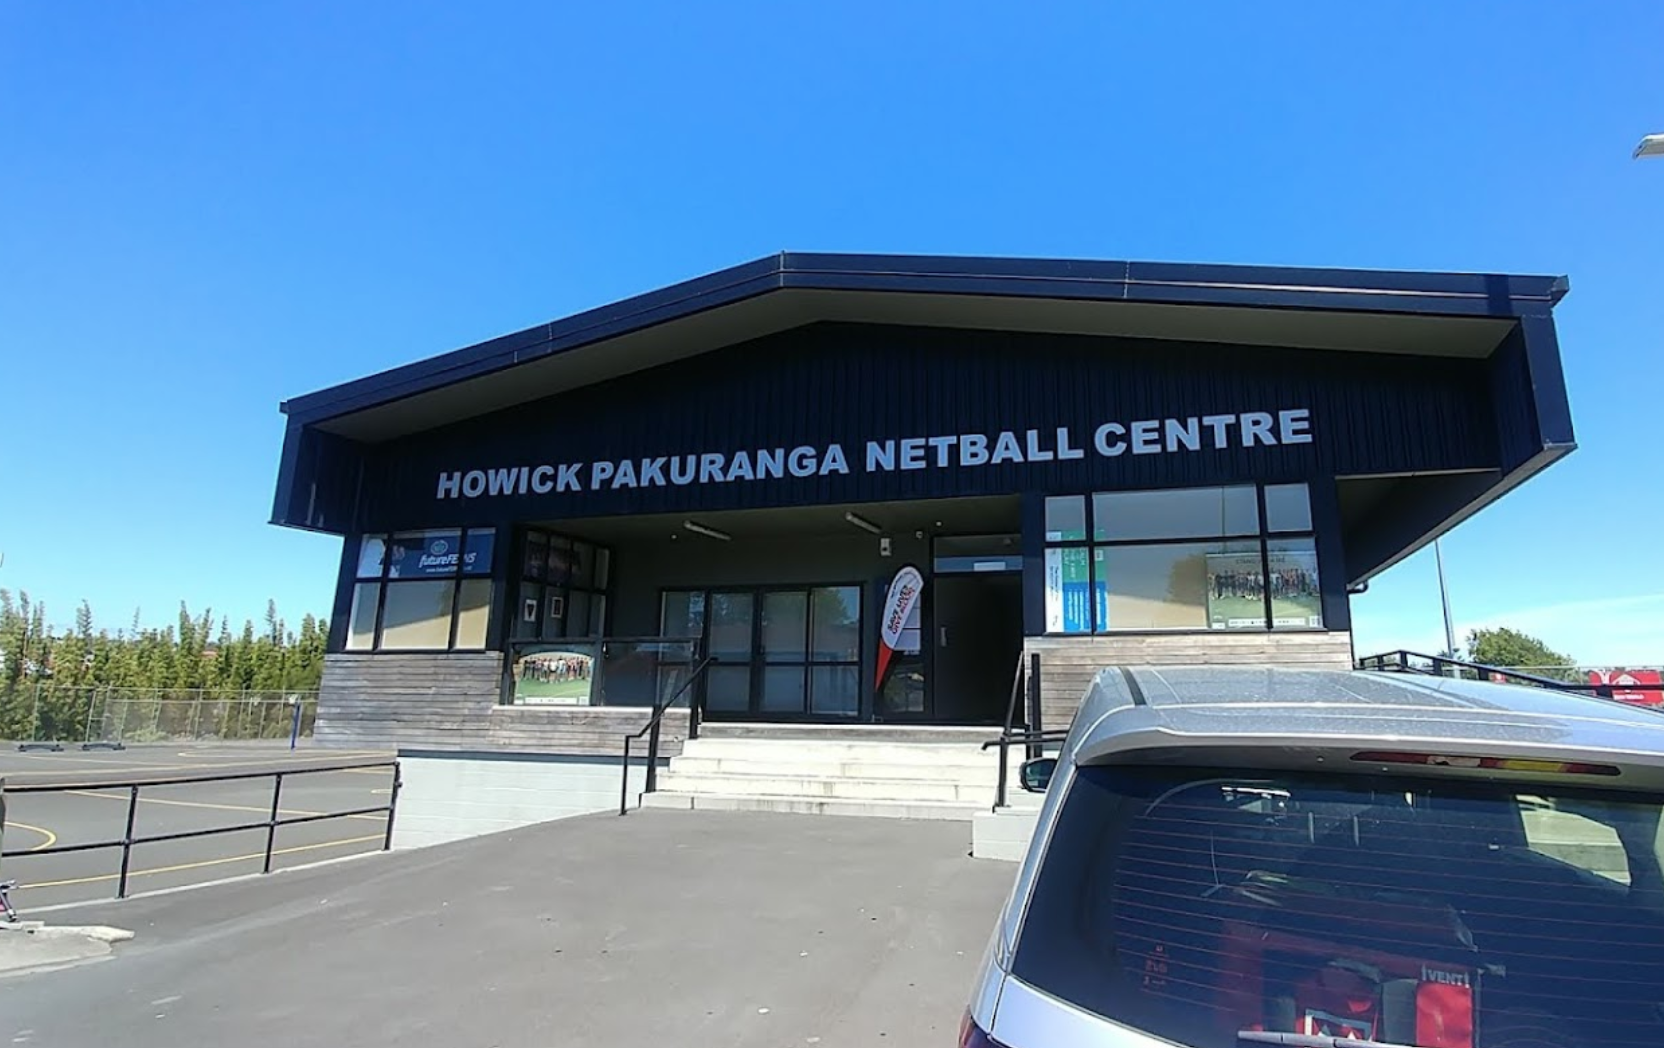 Howick Pakuranga Netball Centre